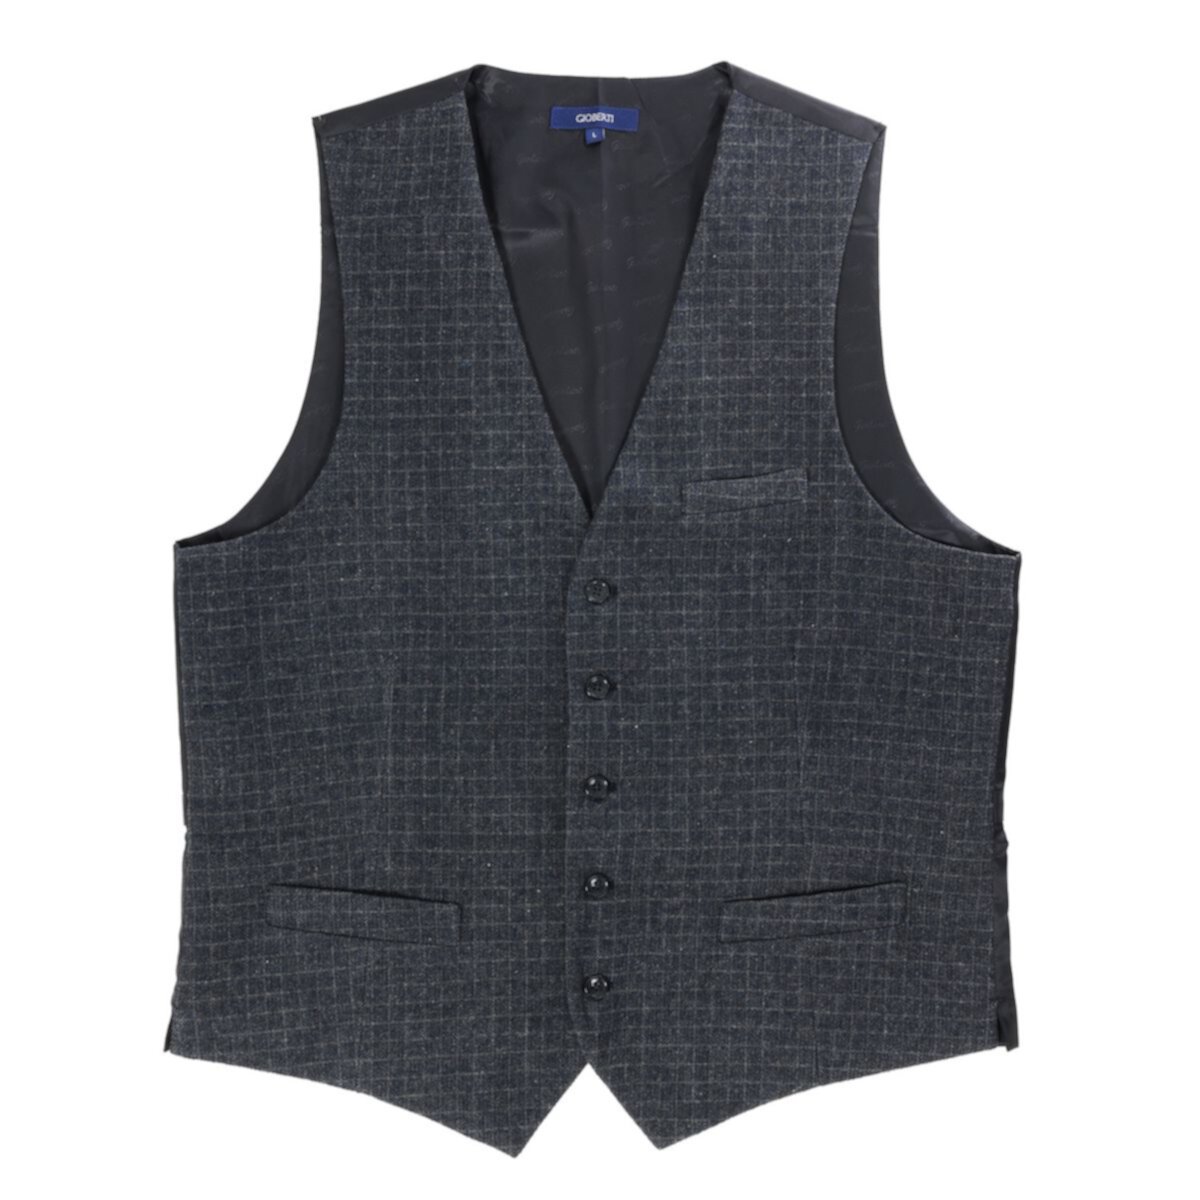 Gioberti Men's 5 Button Slim Fit Formal Herringbone Tweed Suit Vest Gioberti